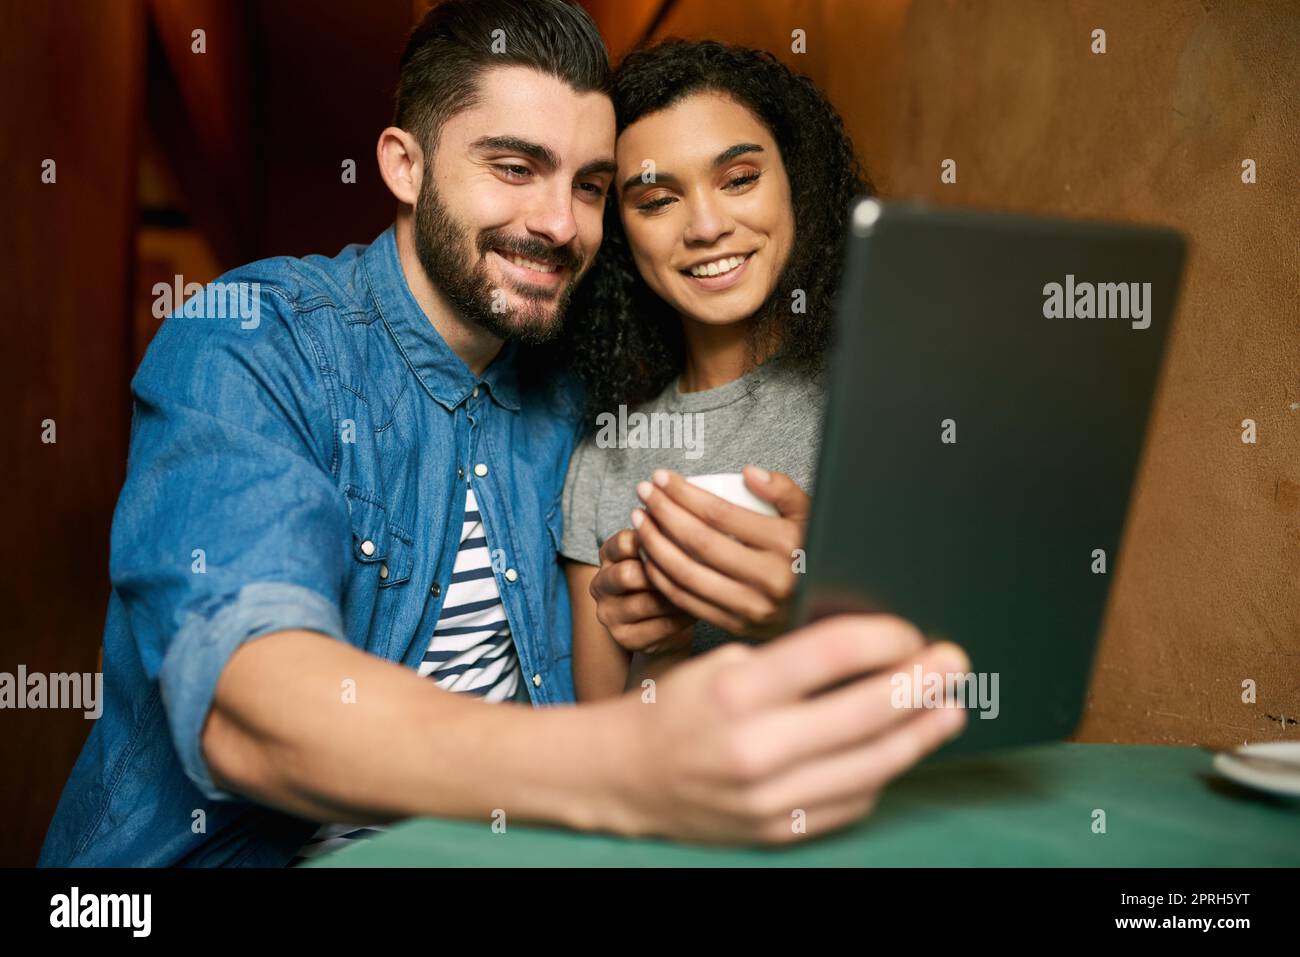 Il nostro tempo libero è quasi trascorso insieme: Una giovane coppia prende un selfie in un bar. Foto Stock